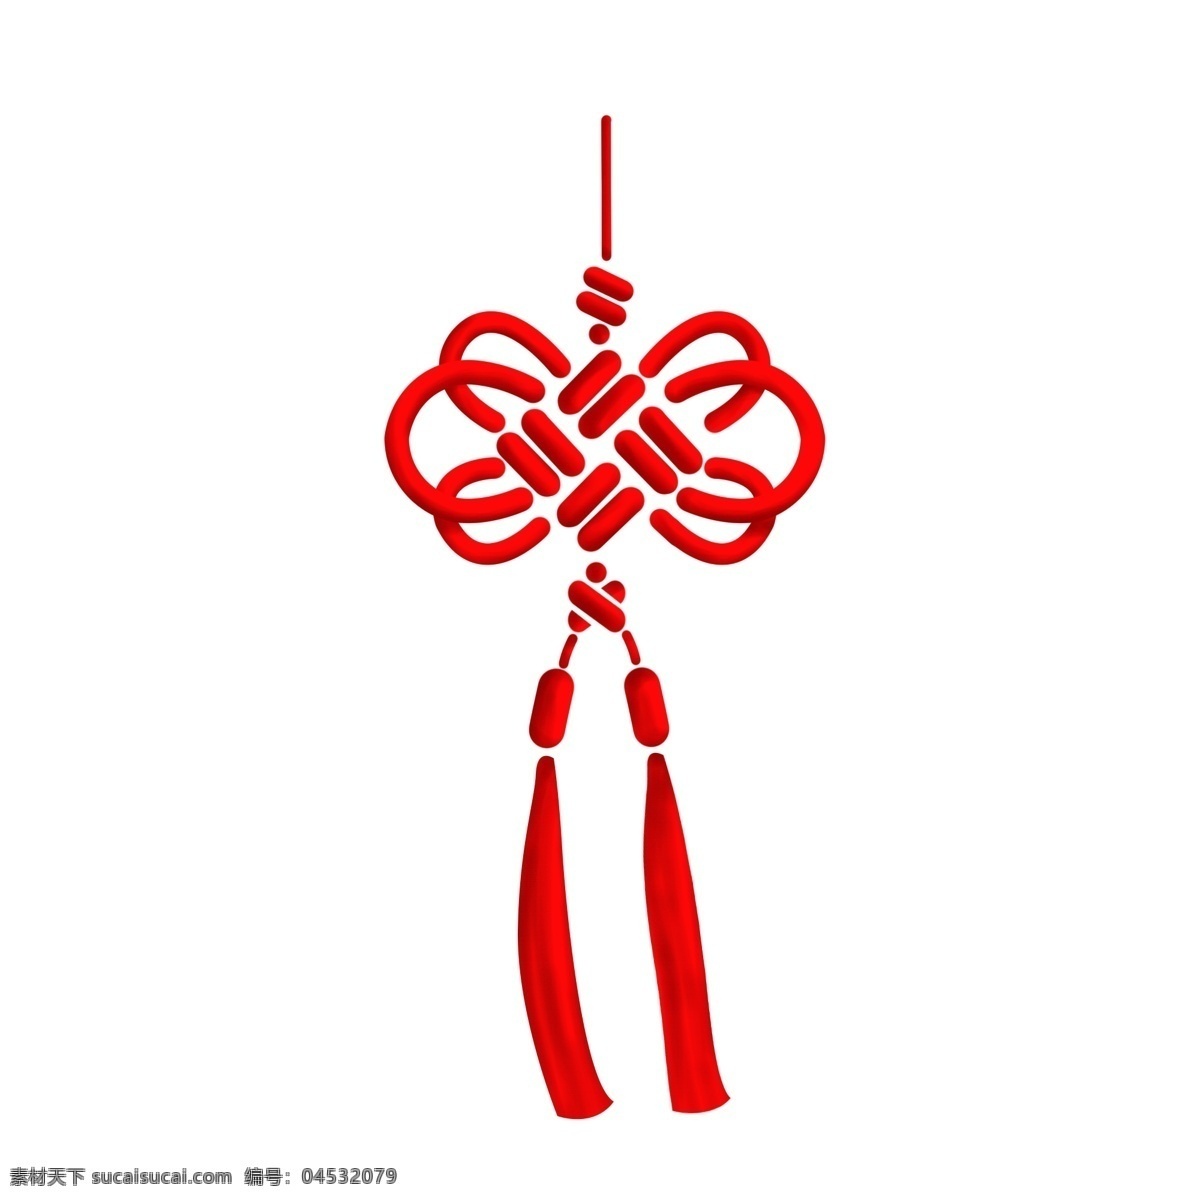 中国结 传统 红色 四方 结 吊饰 传统中国结 红色中国结 四方结 中国结吊饰